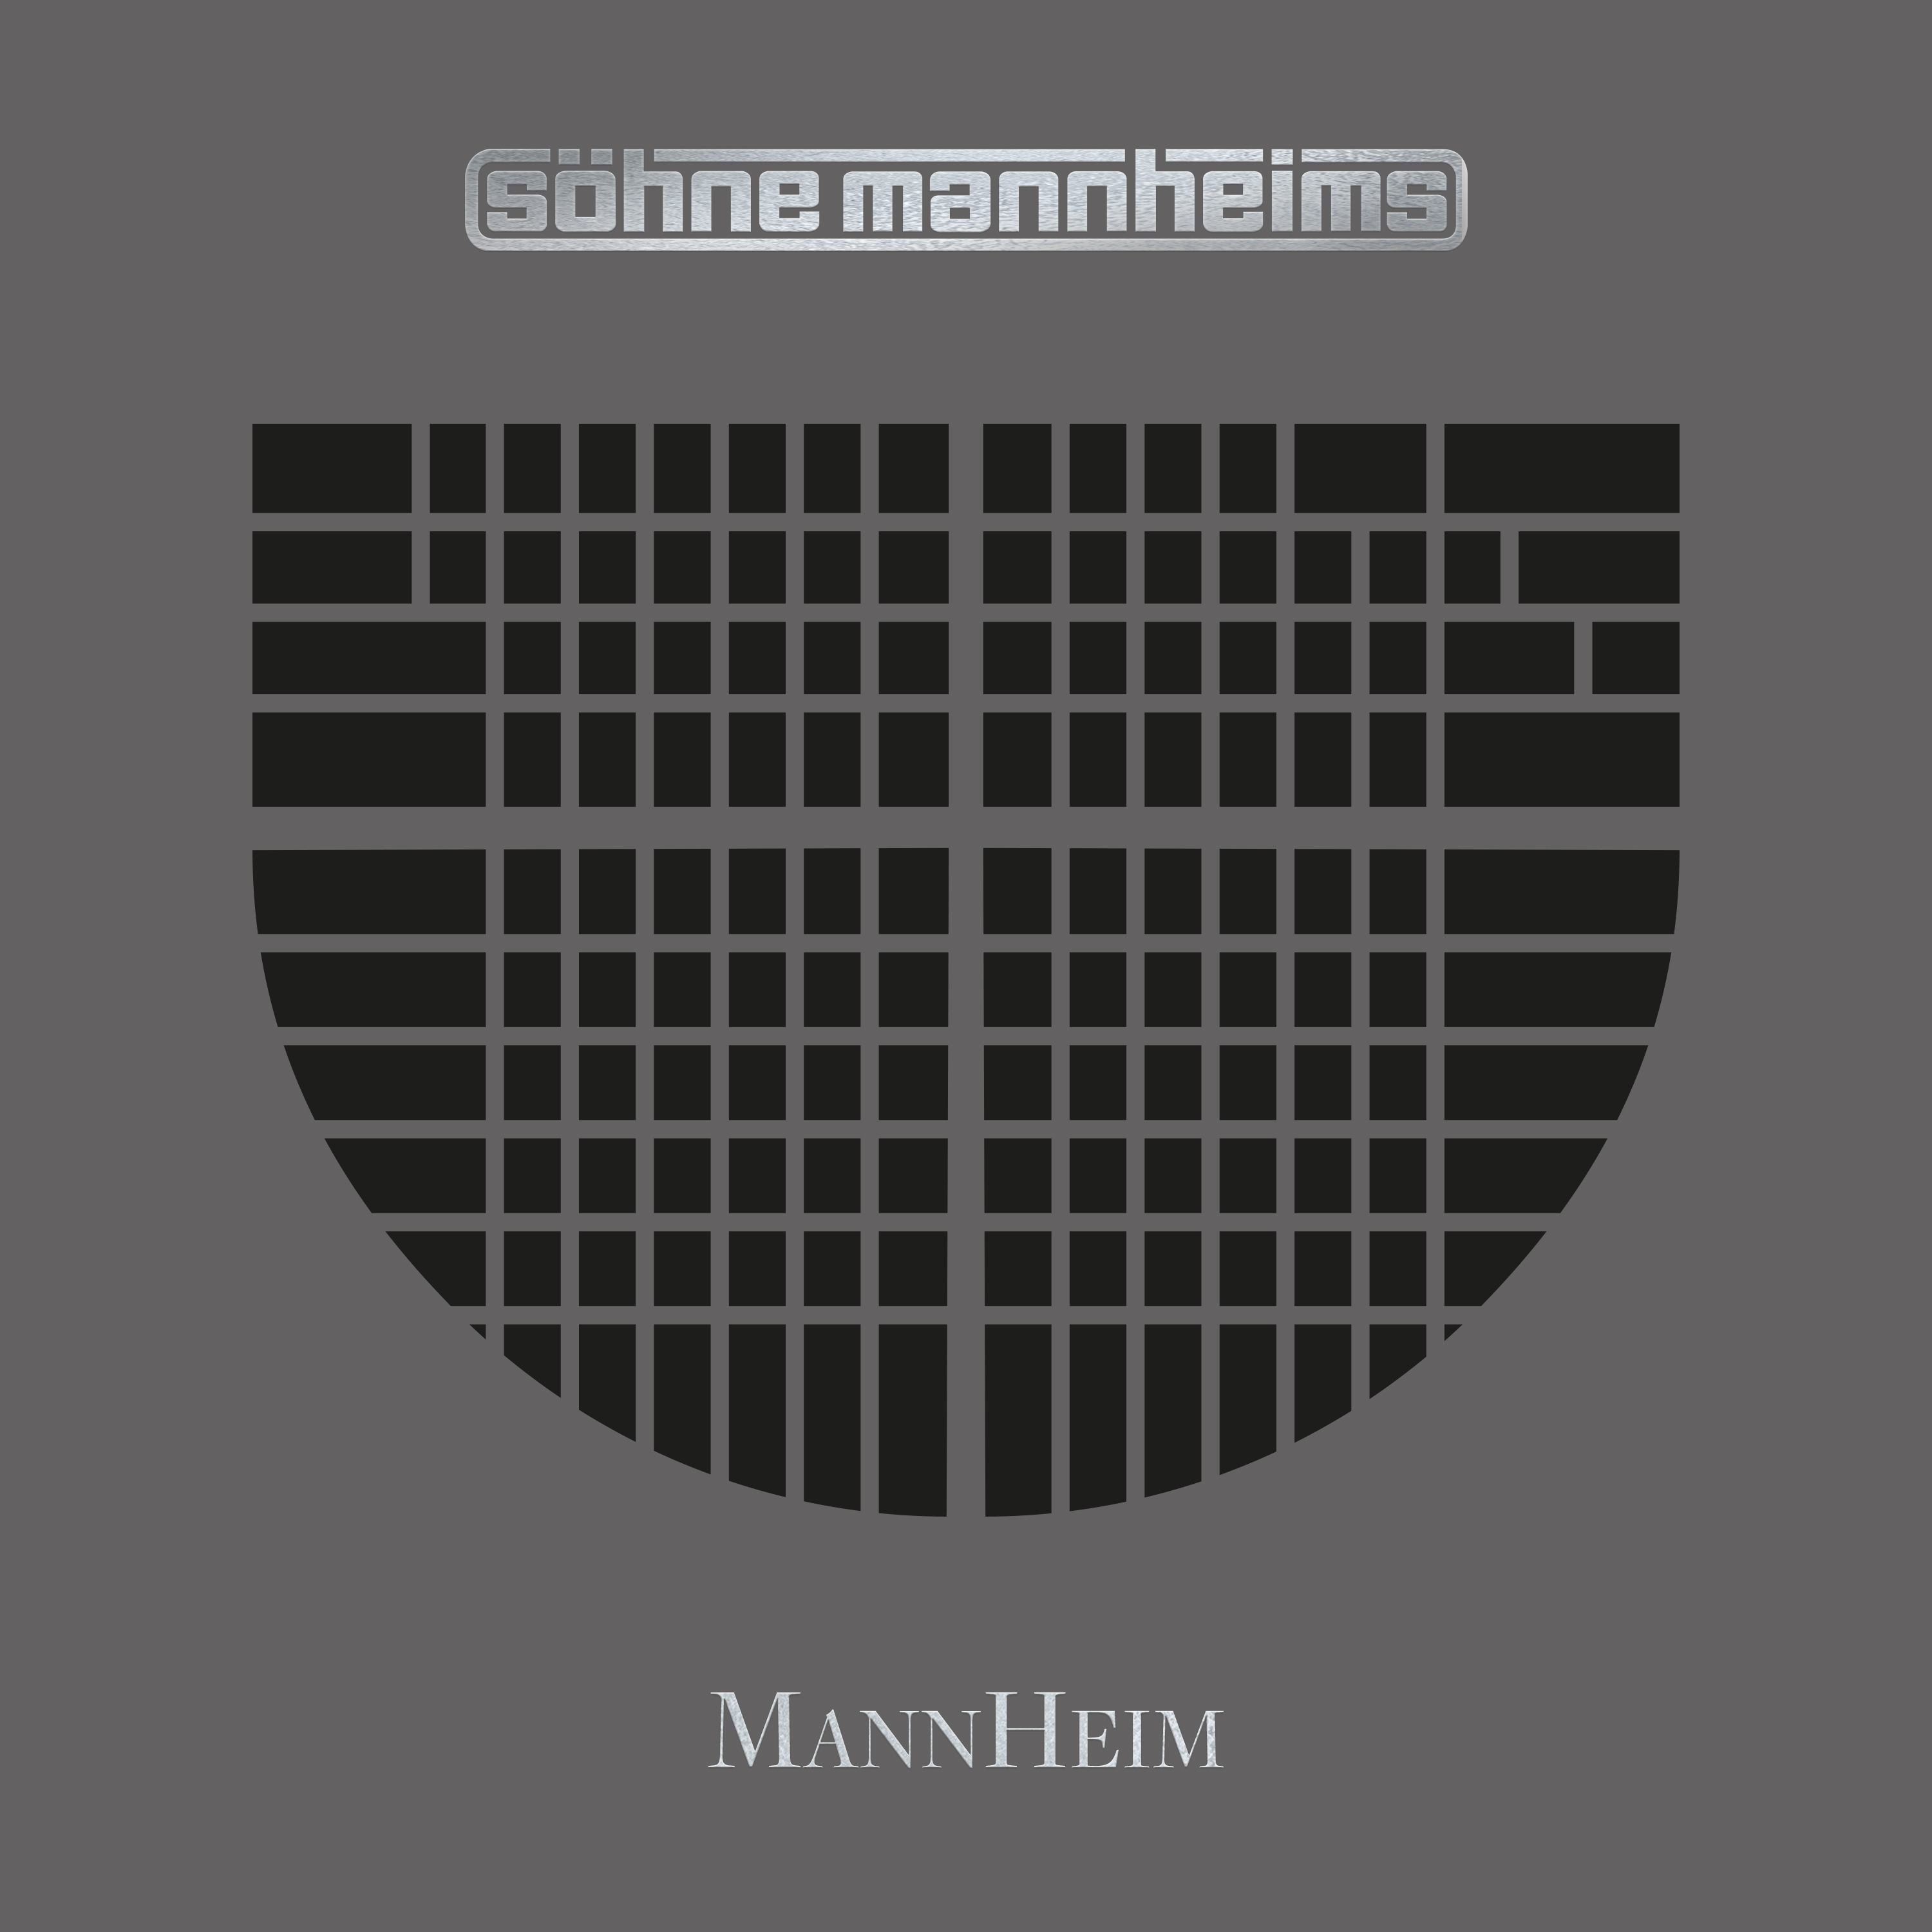 Söhne Mannheims // MannHeim